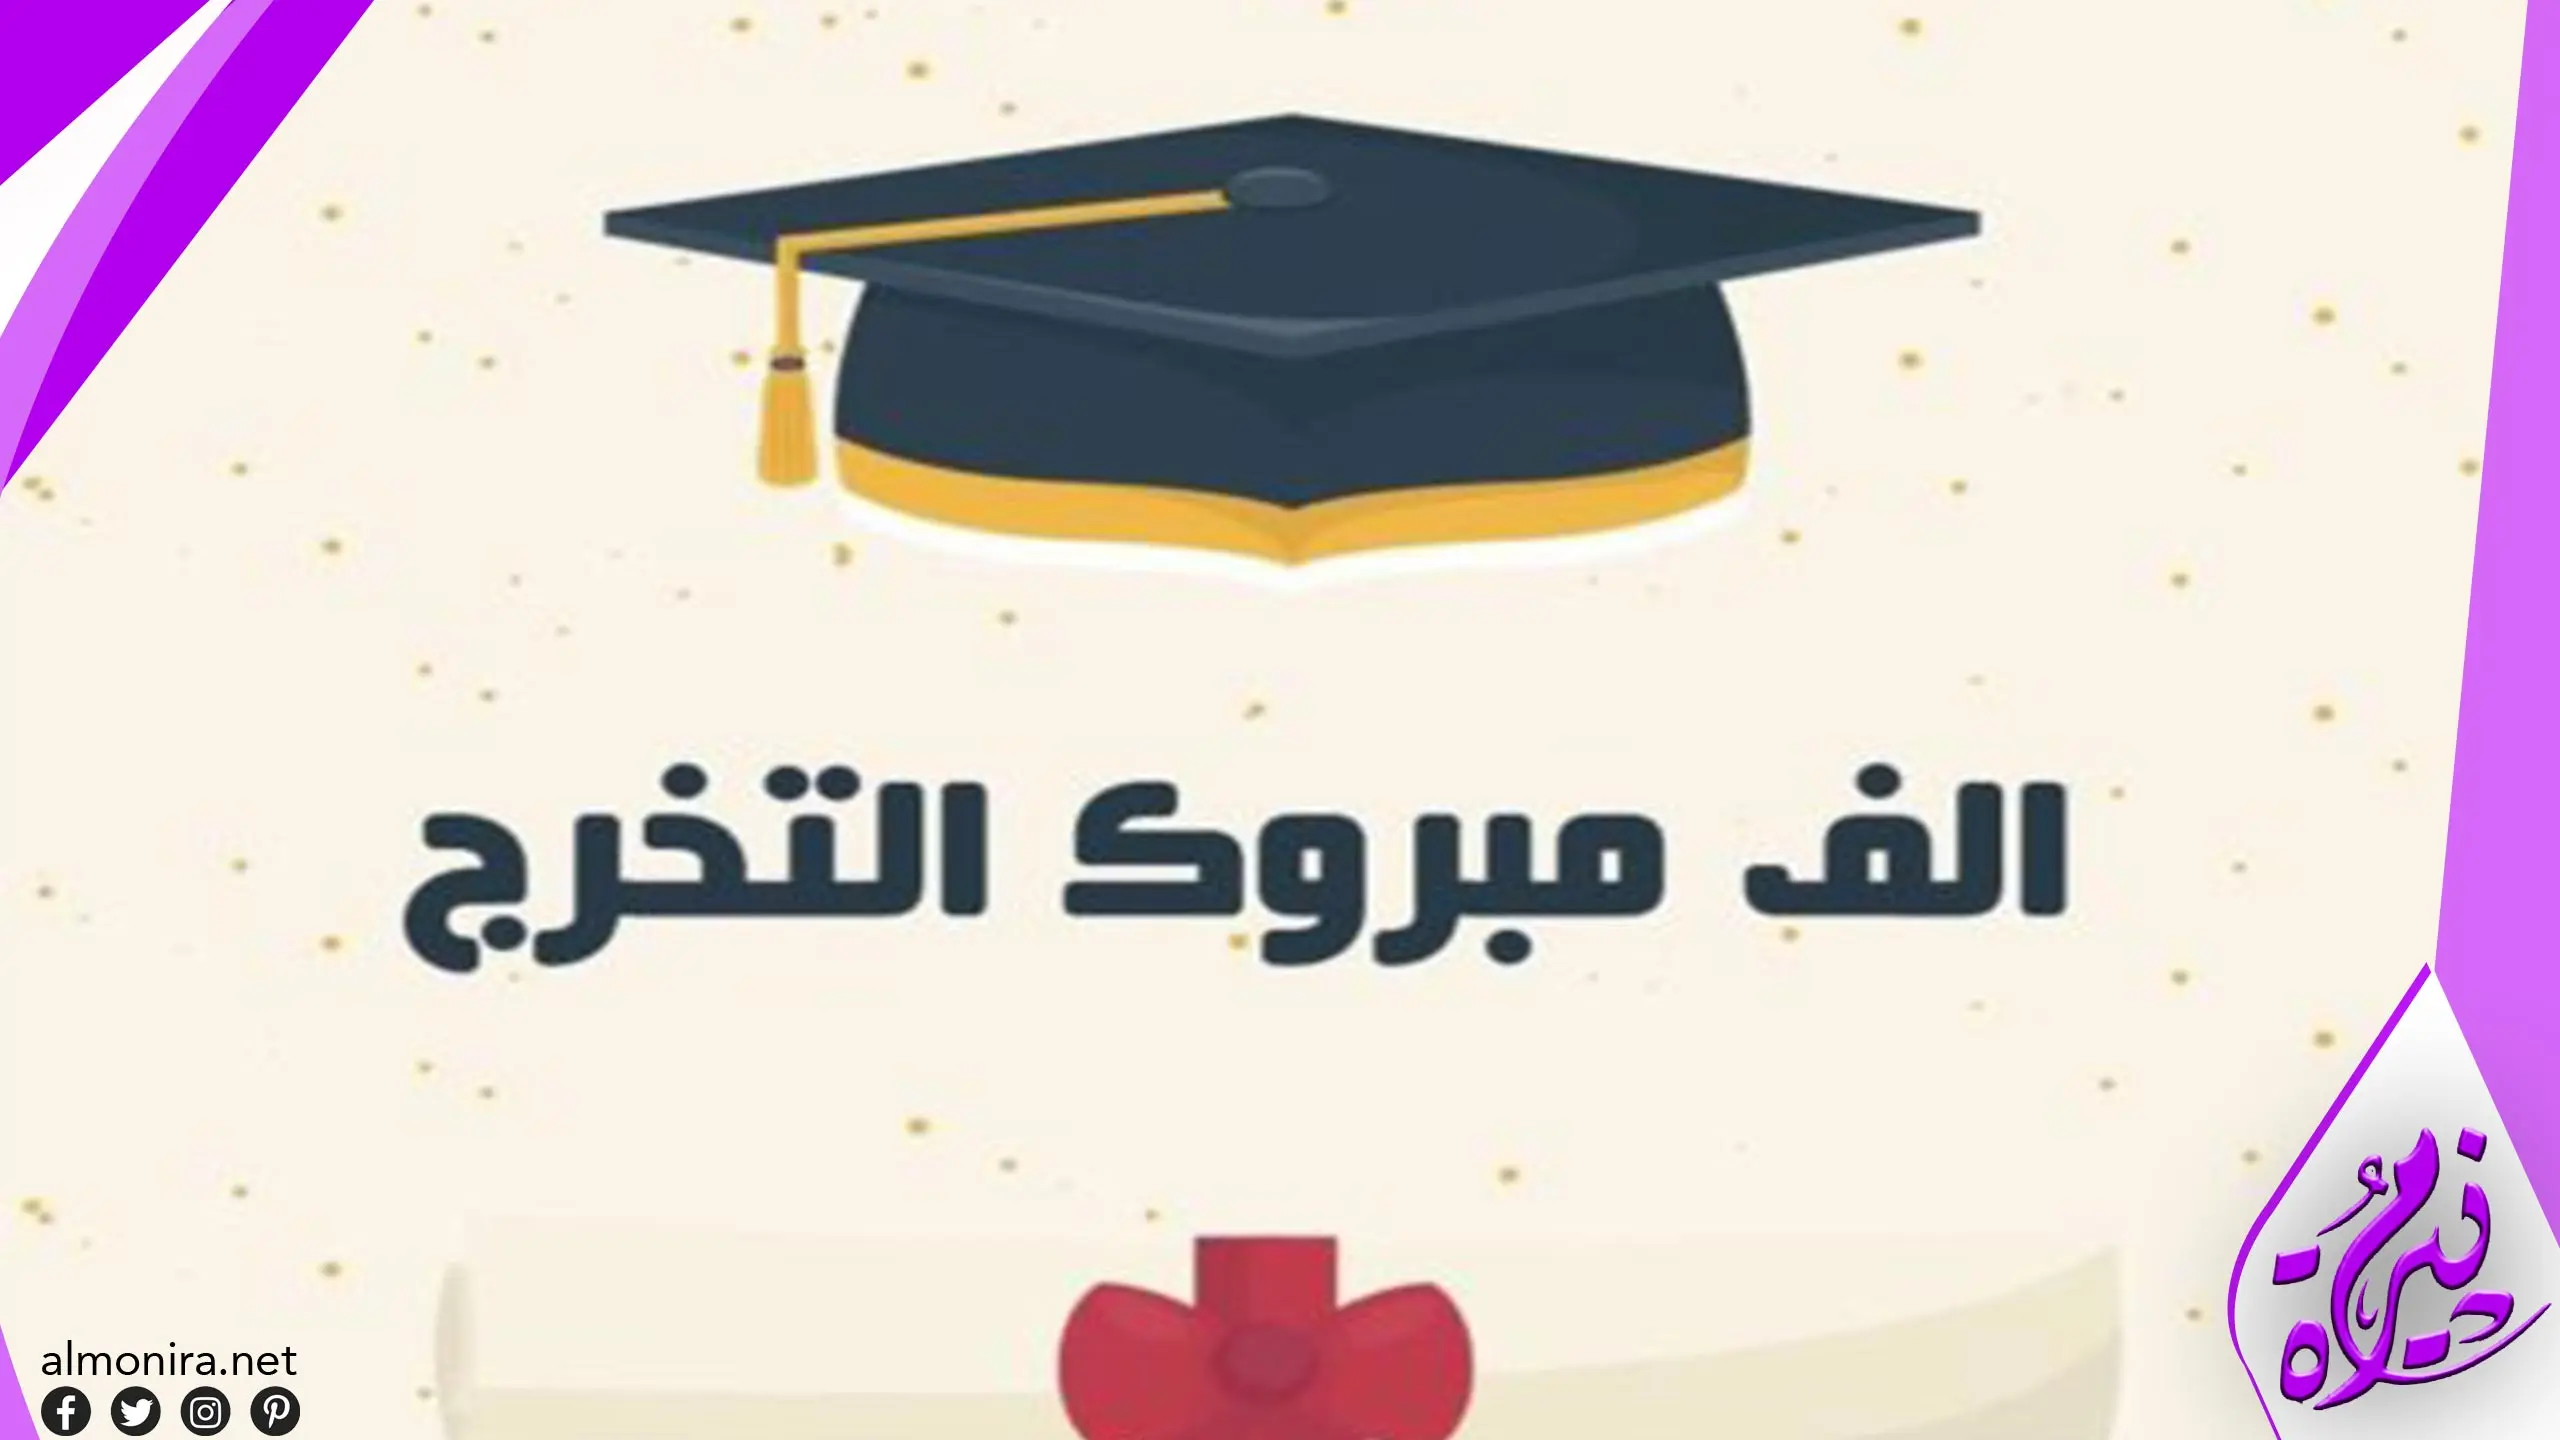 عبارات وكلمات للأم بمناسبة التخرج من الجامعة